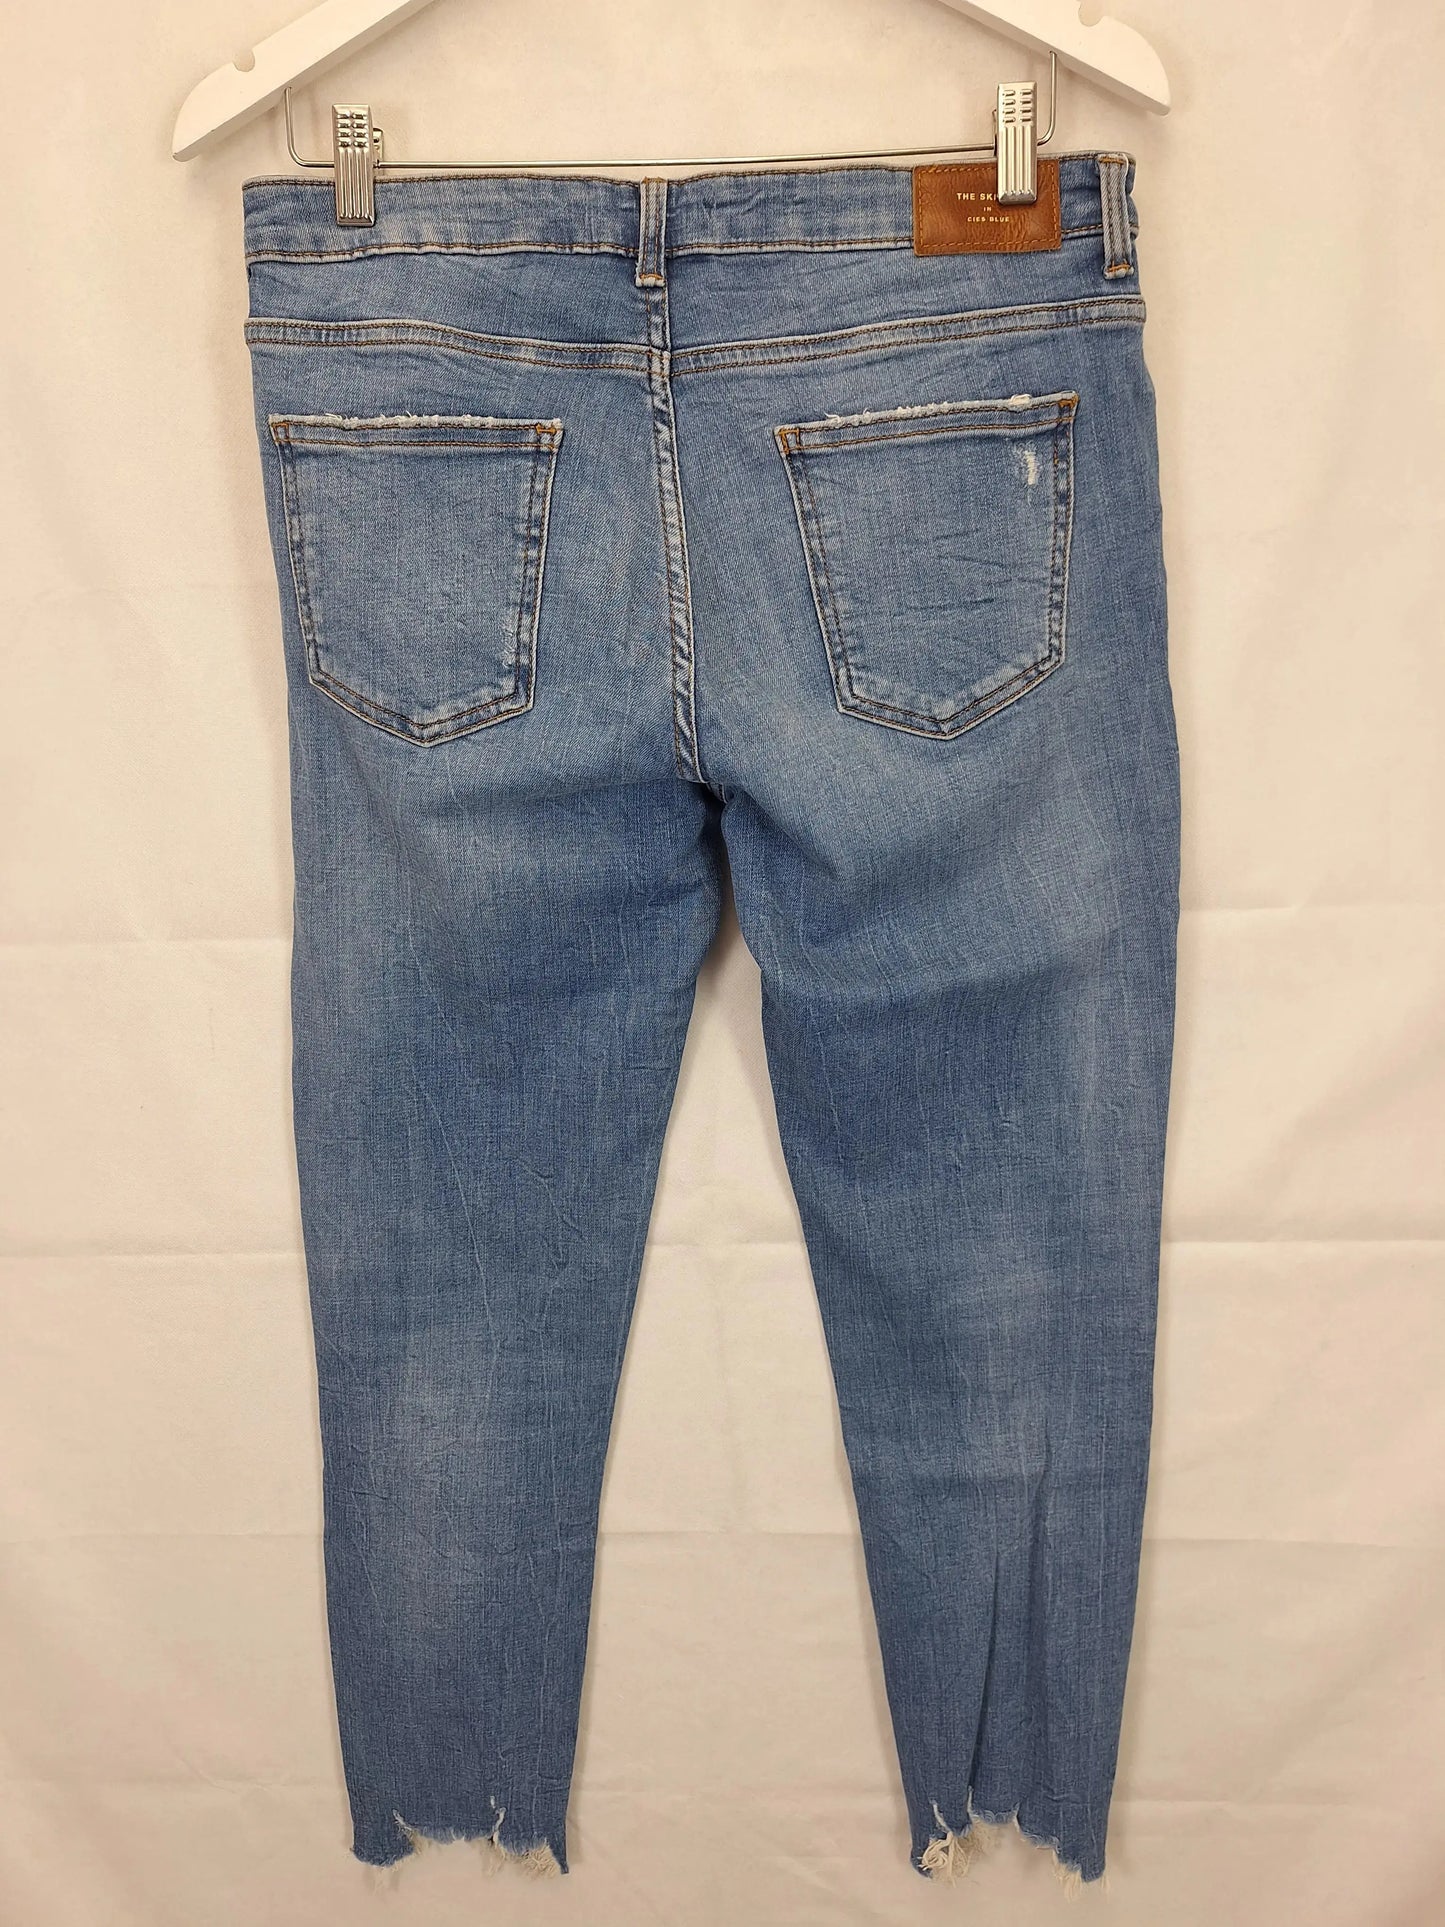 Zara Distressed Denim Jeans Size 14